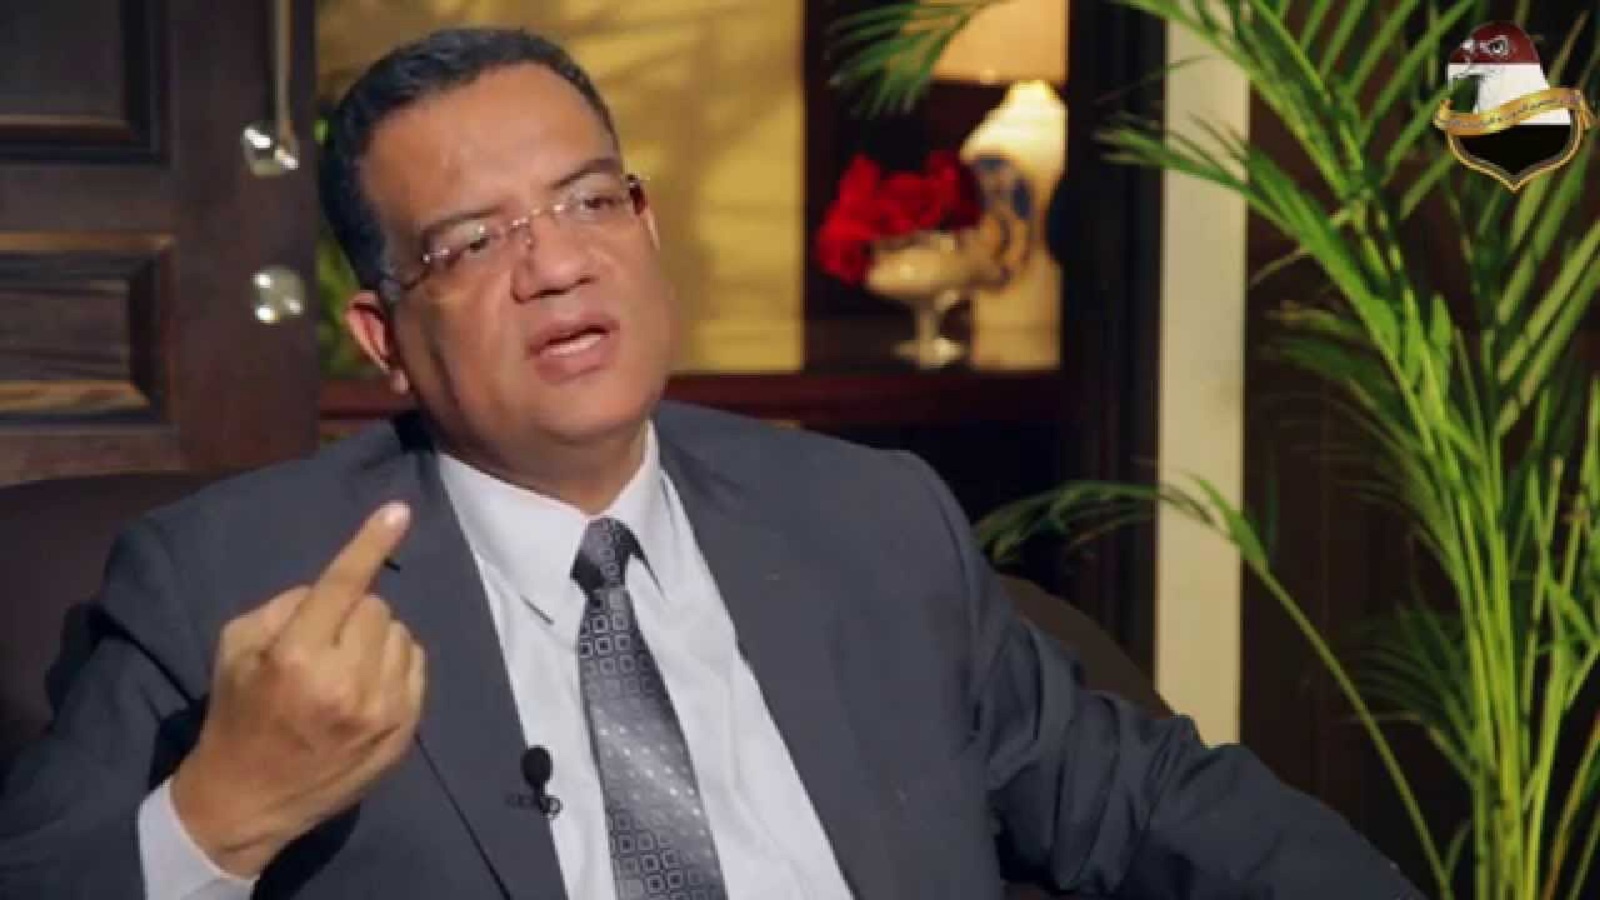 محمود مسلم: من رئاسة تحرير "المصري اليوم" إلى "الوطن"